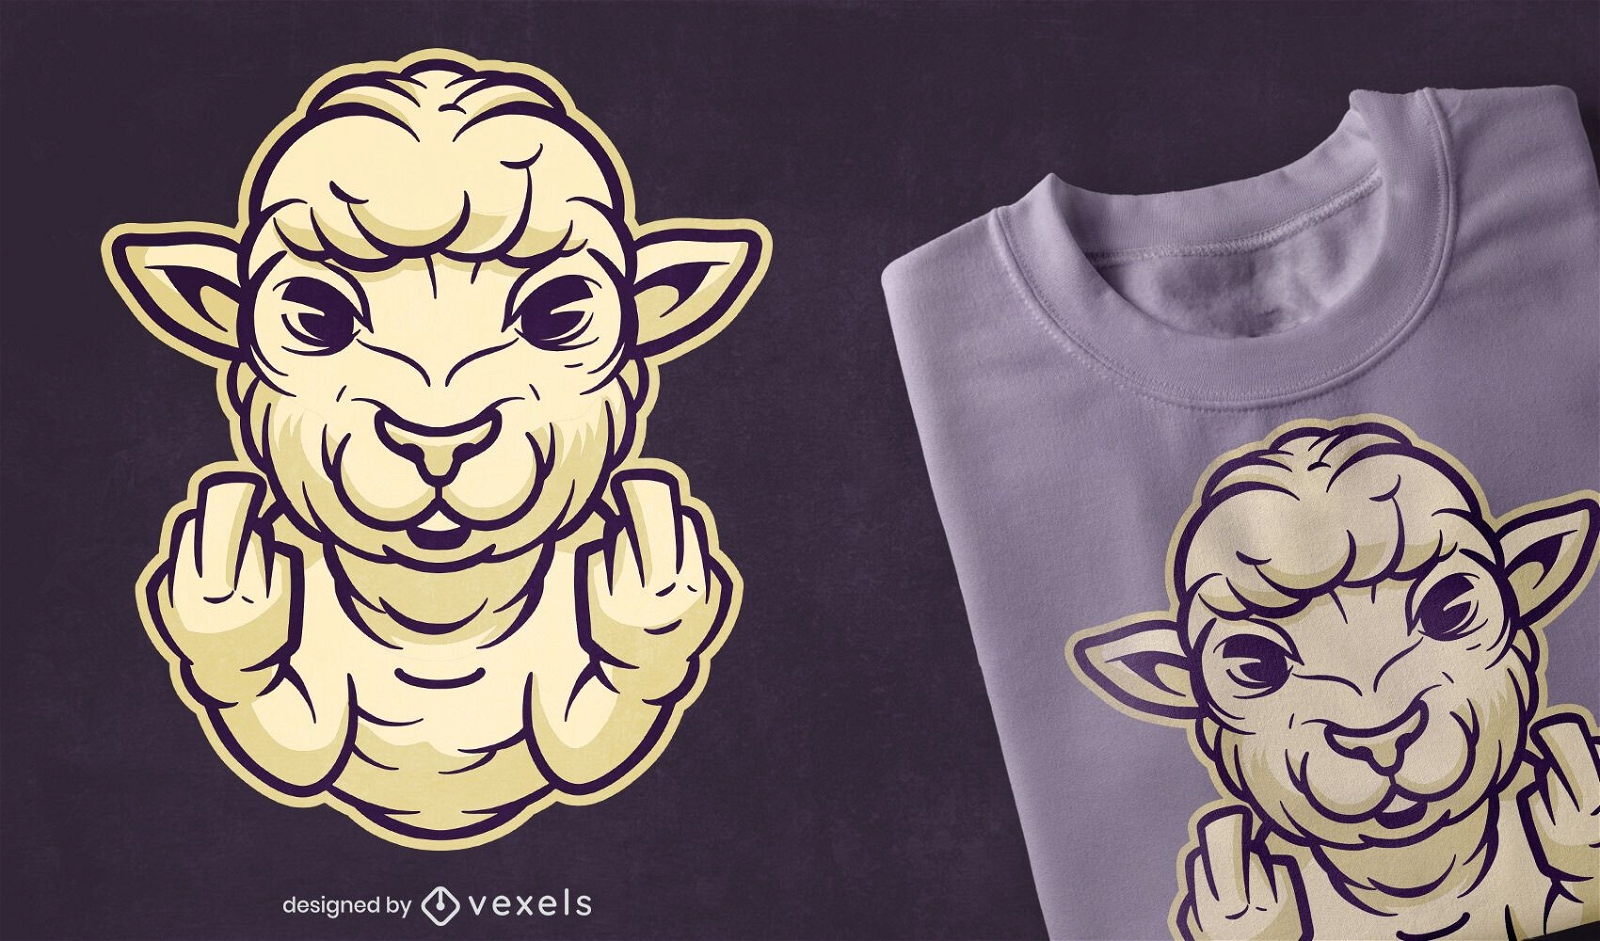 Sheep middle finger t-shirt design